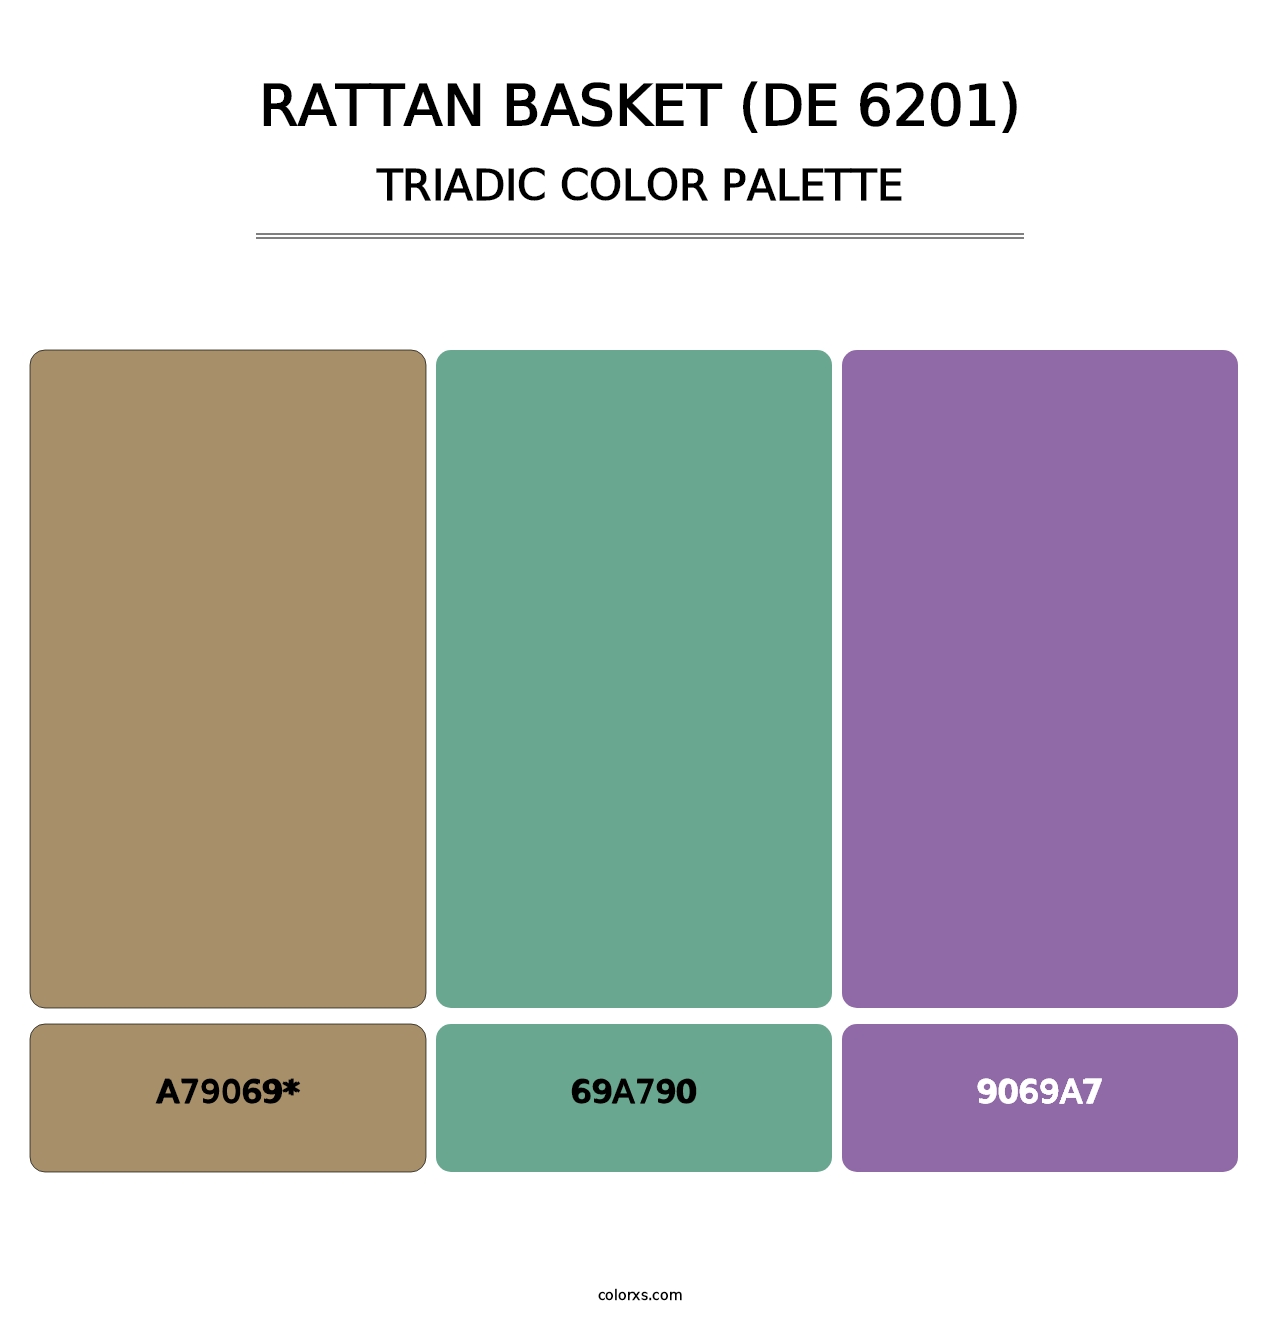 Rattan Basket (DE 6201) - Triadic Color Palette